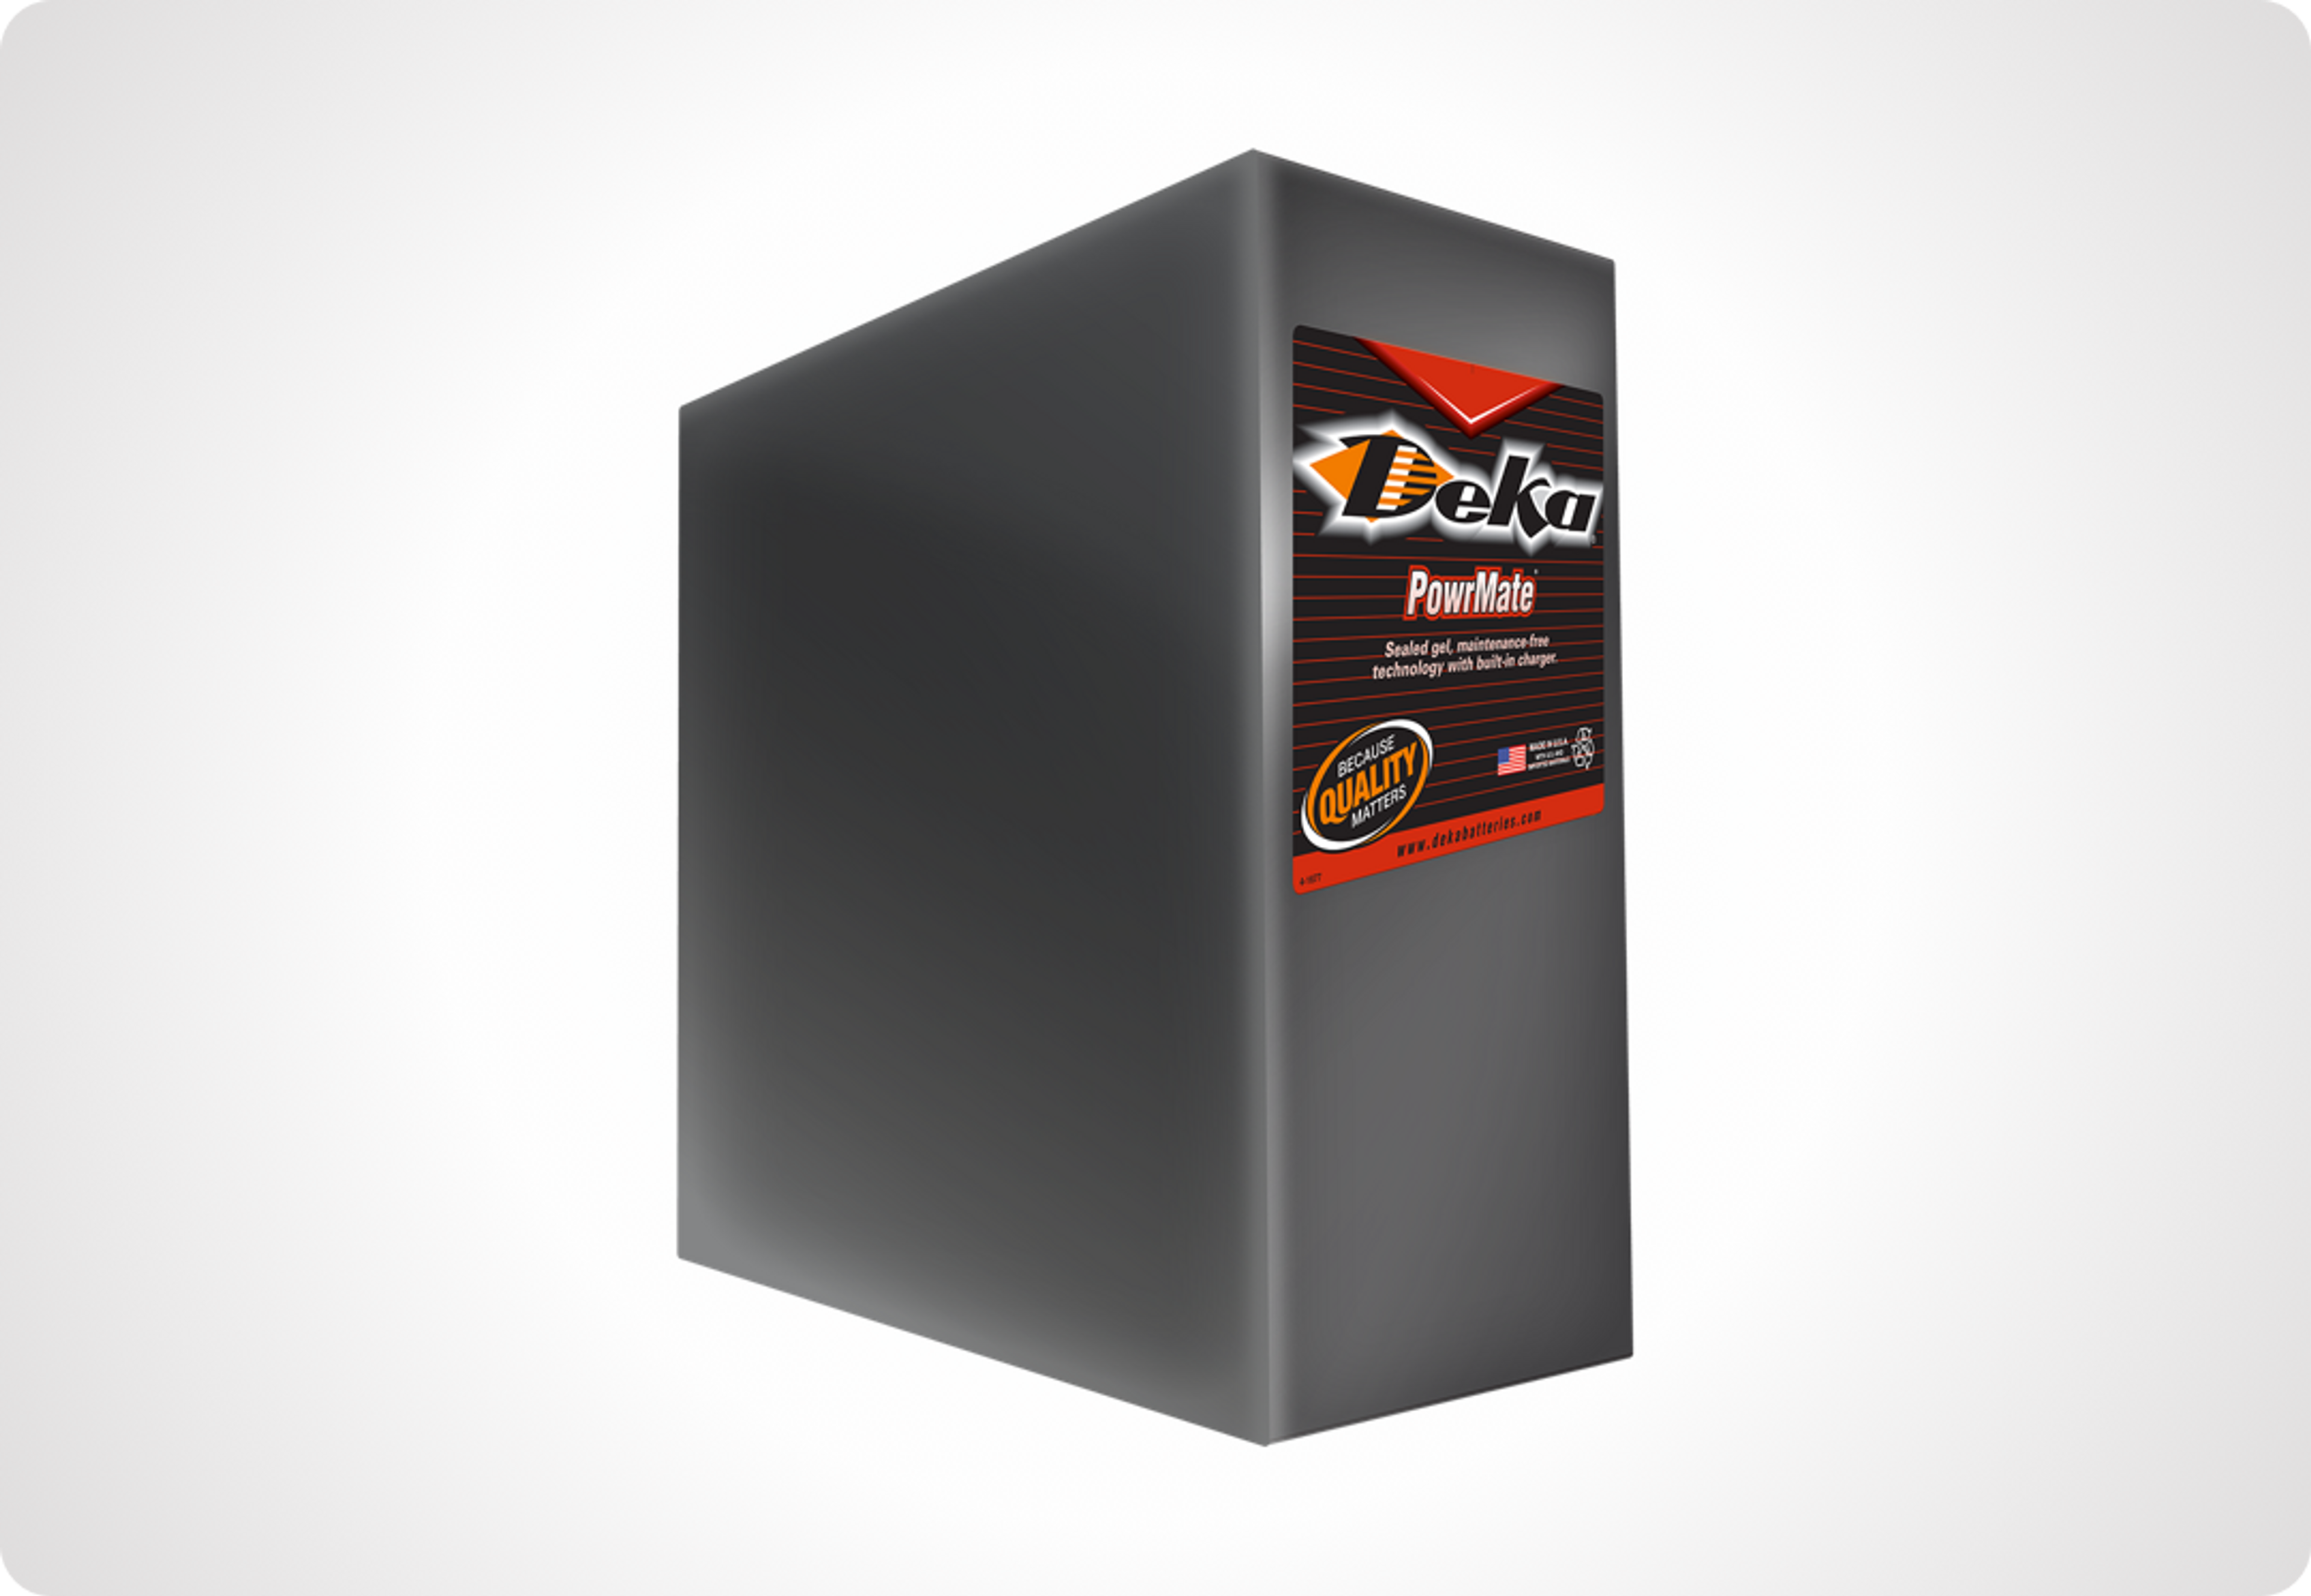 Picture of Deka PowrMate™ Material Handling Batteries